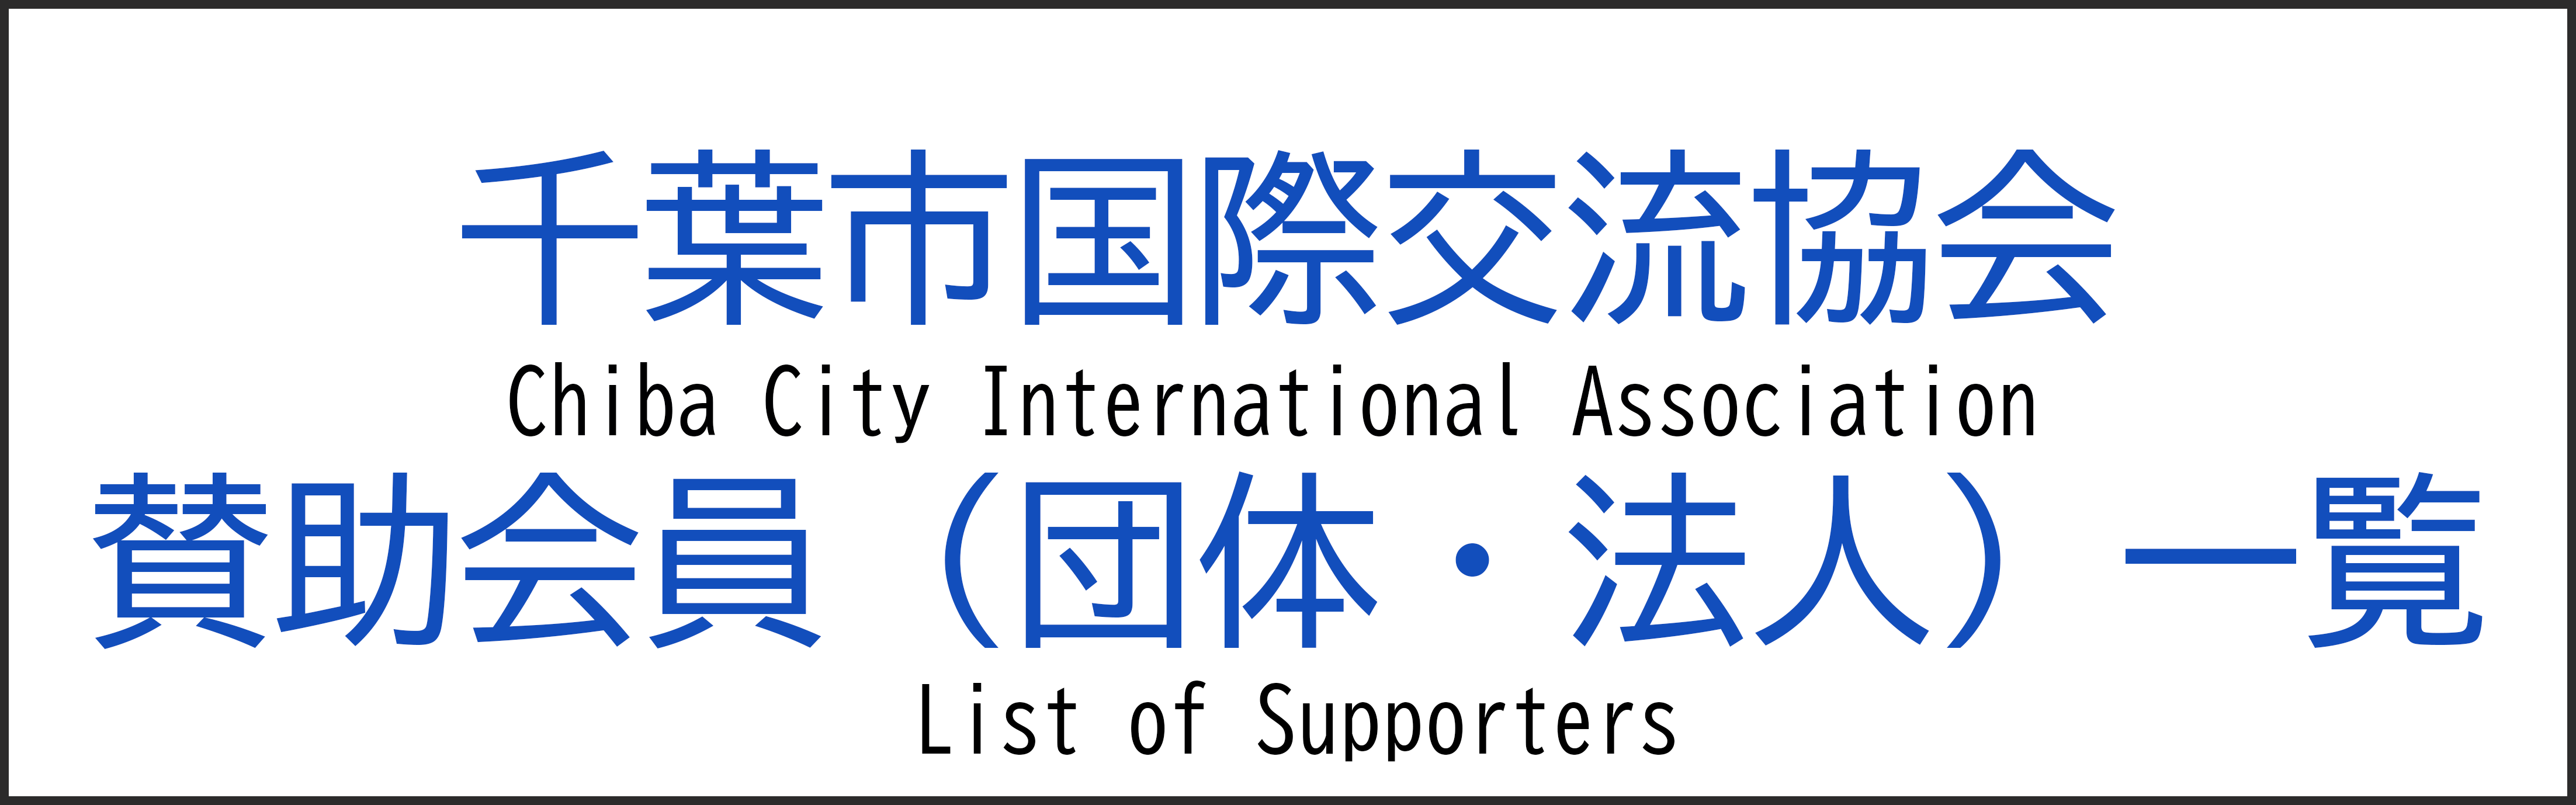 Liste des membres de soutien (organisations/corporations)